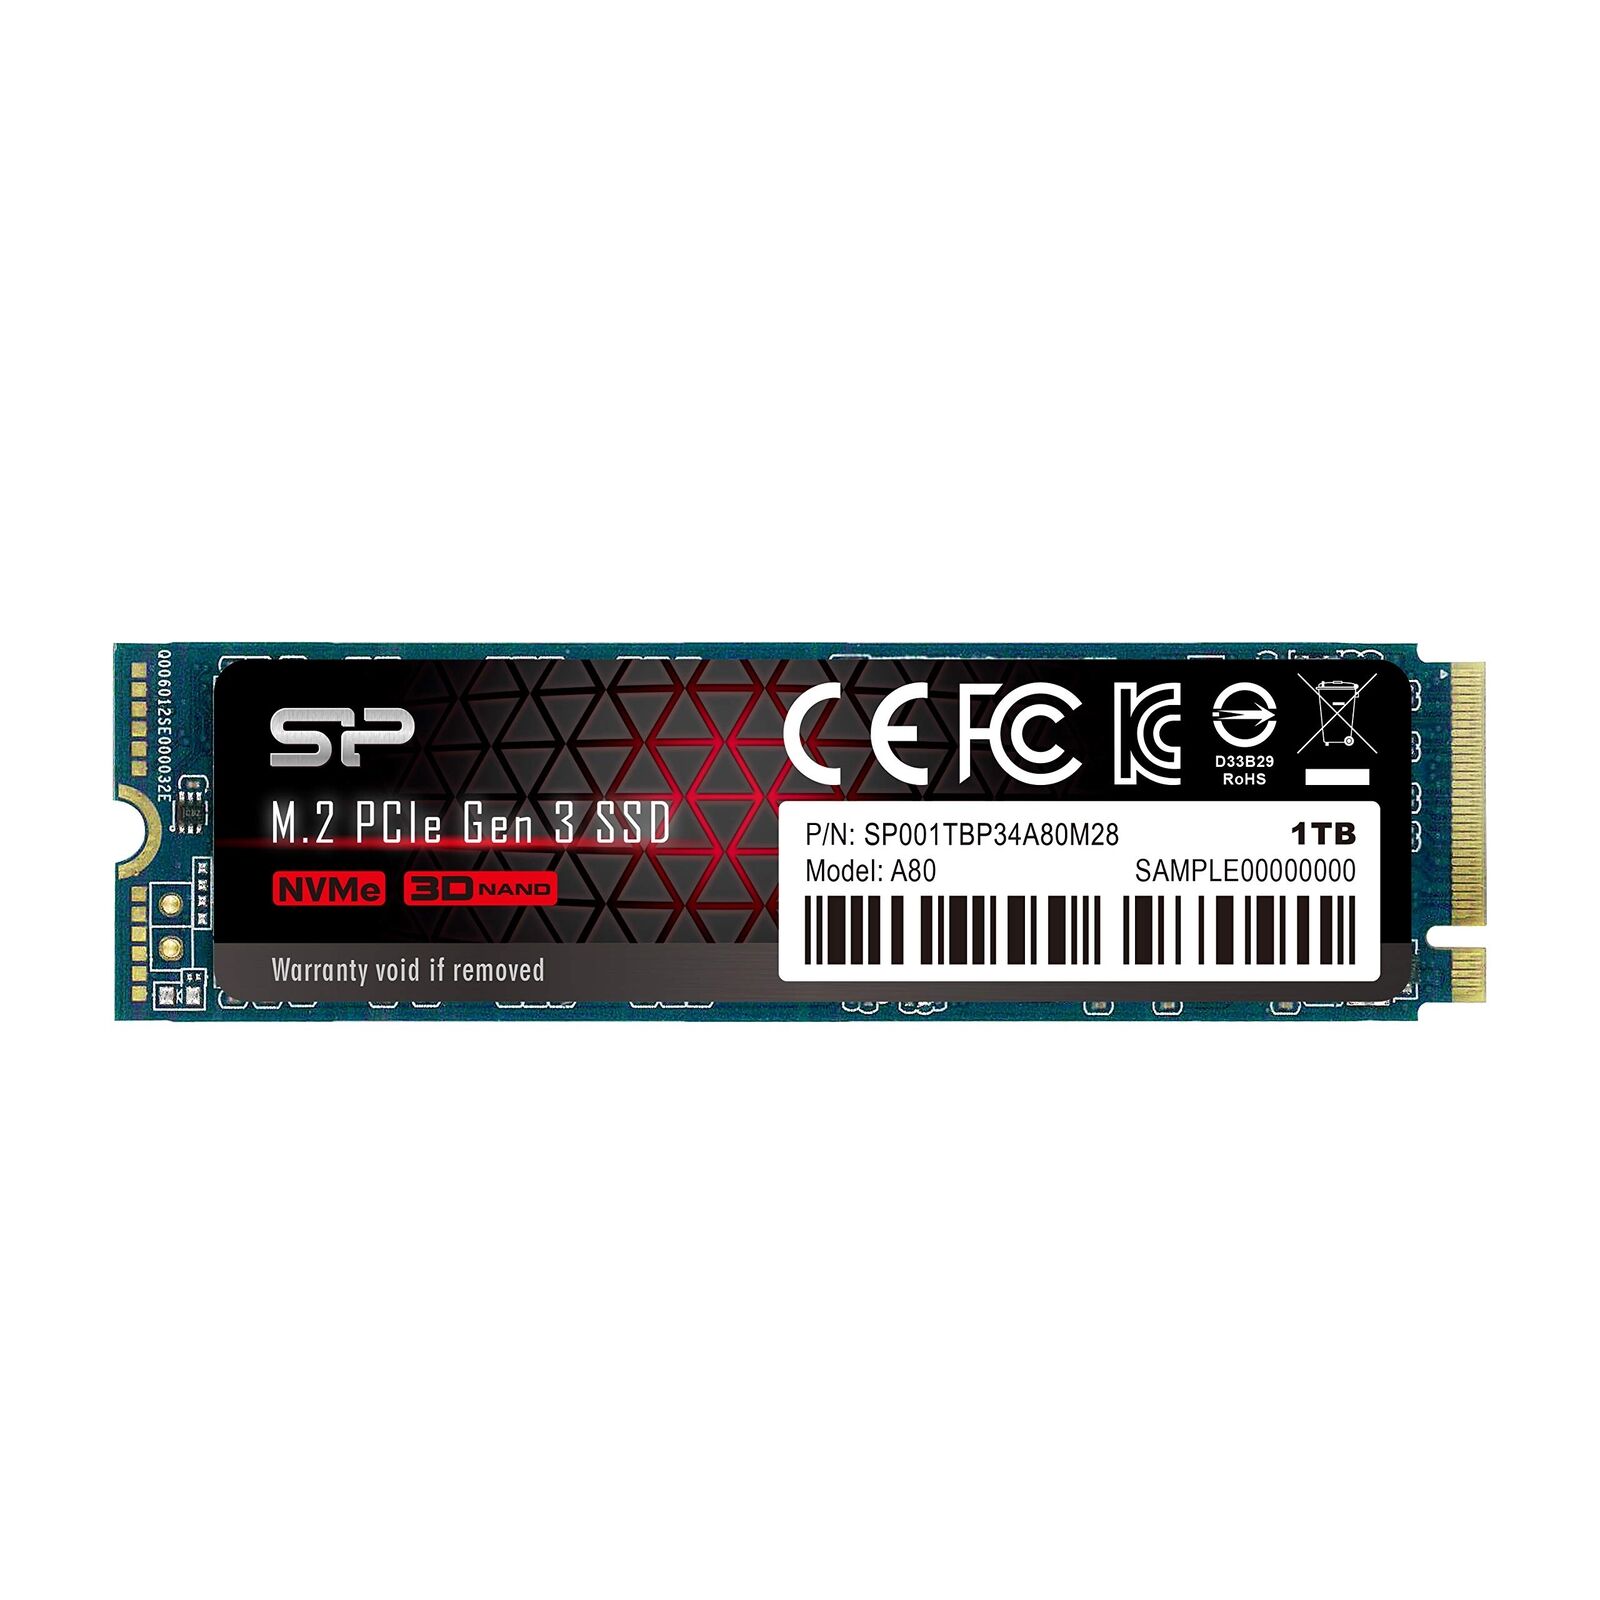 Siliconpow SSD P34A80 1TB, M.2 PCIe Gen3 x4 NVMe, 3200/3000 MB/s SP001TBP34A80M2